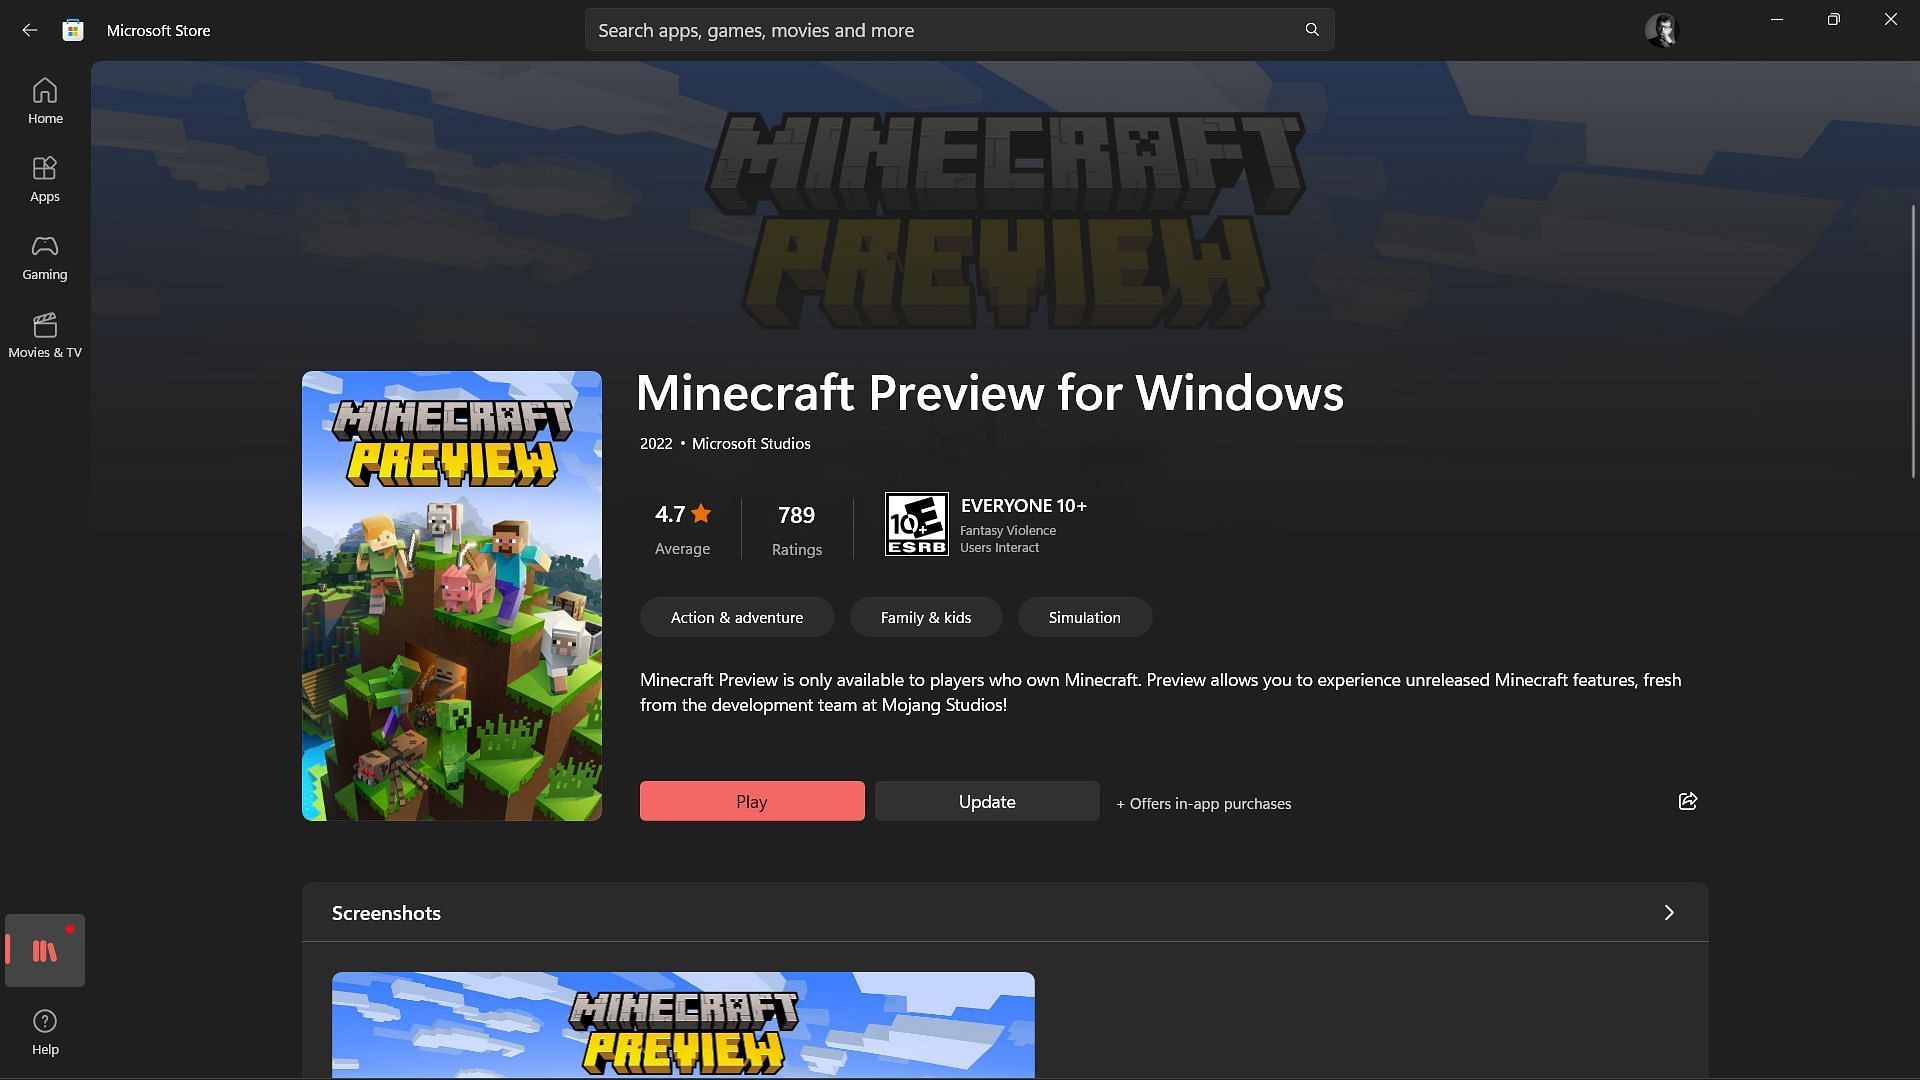 Minecraft Beta & Preview - 1.19.70.20 – Minecraft Feedback